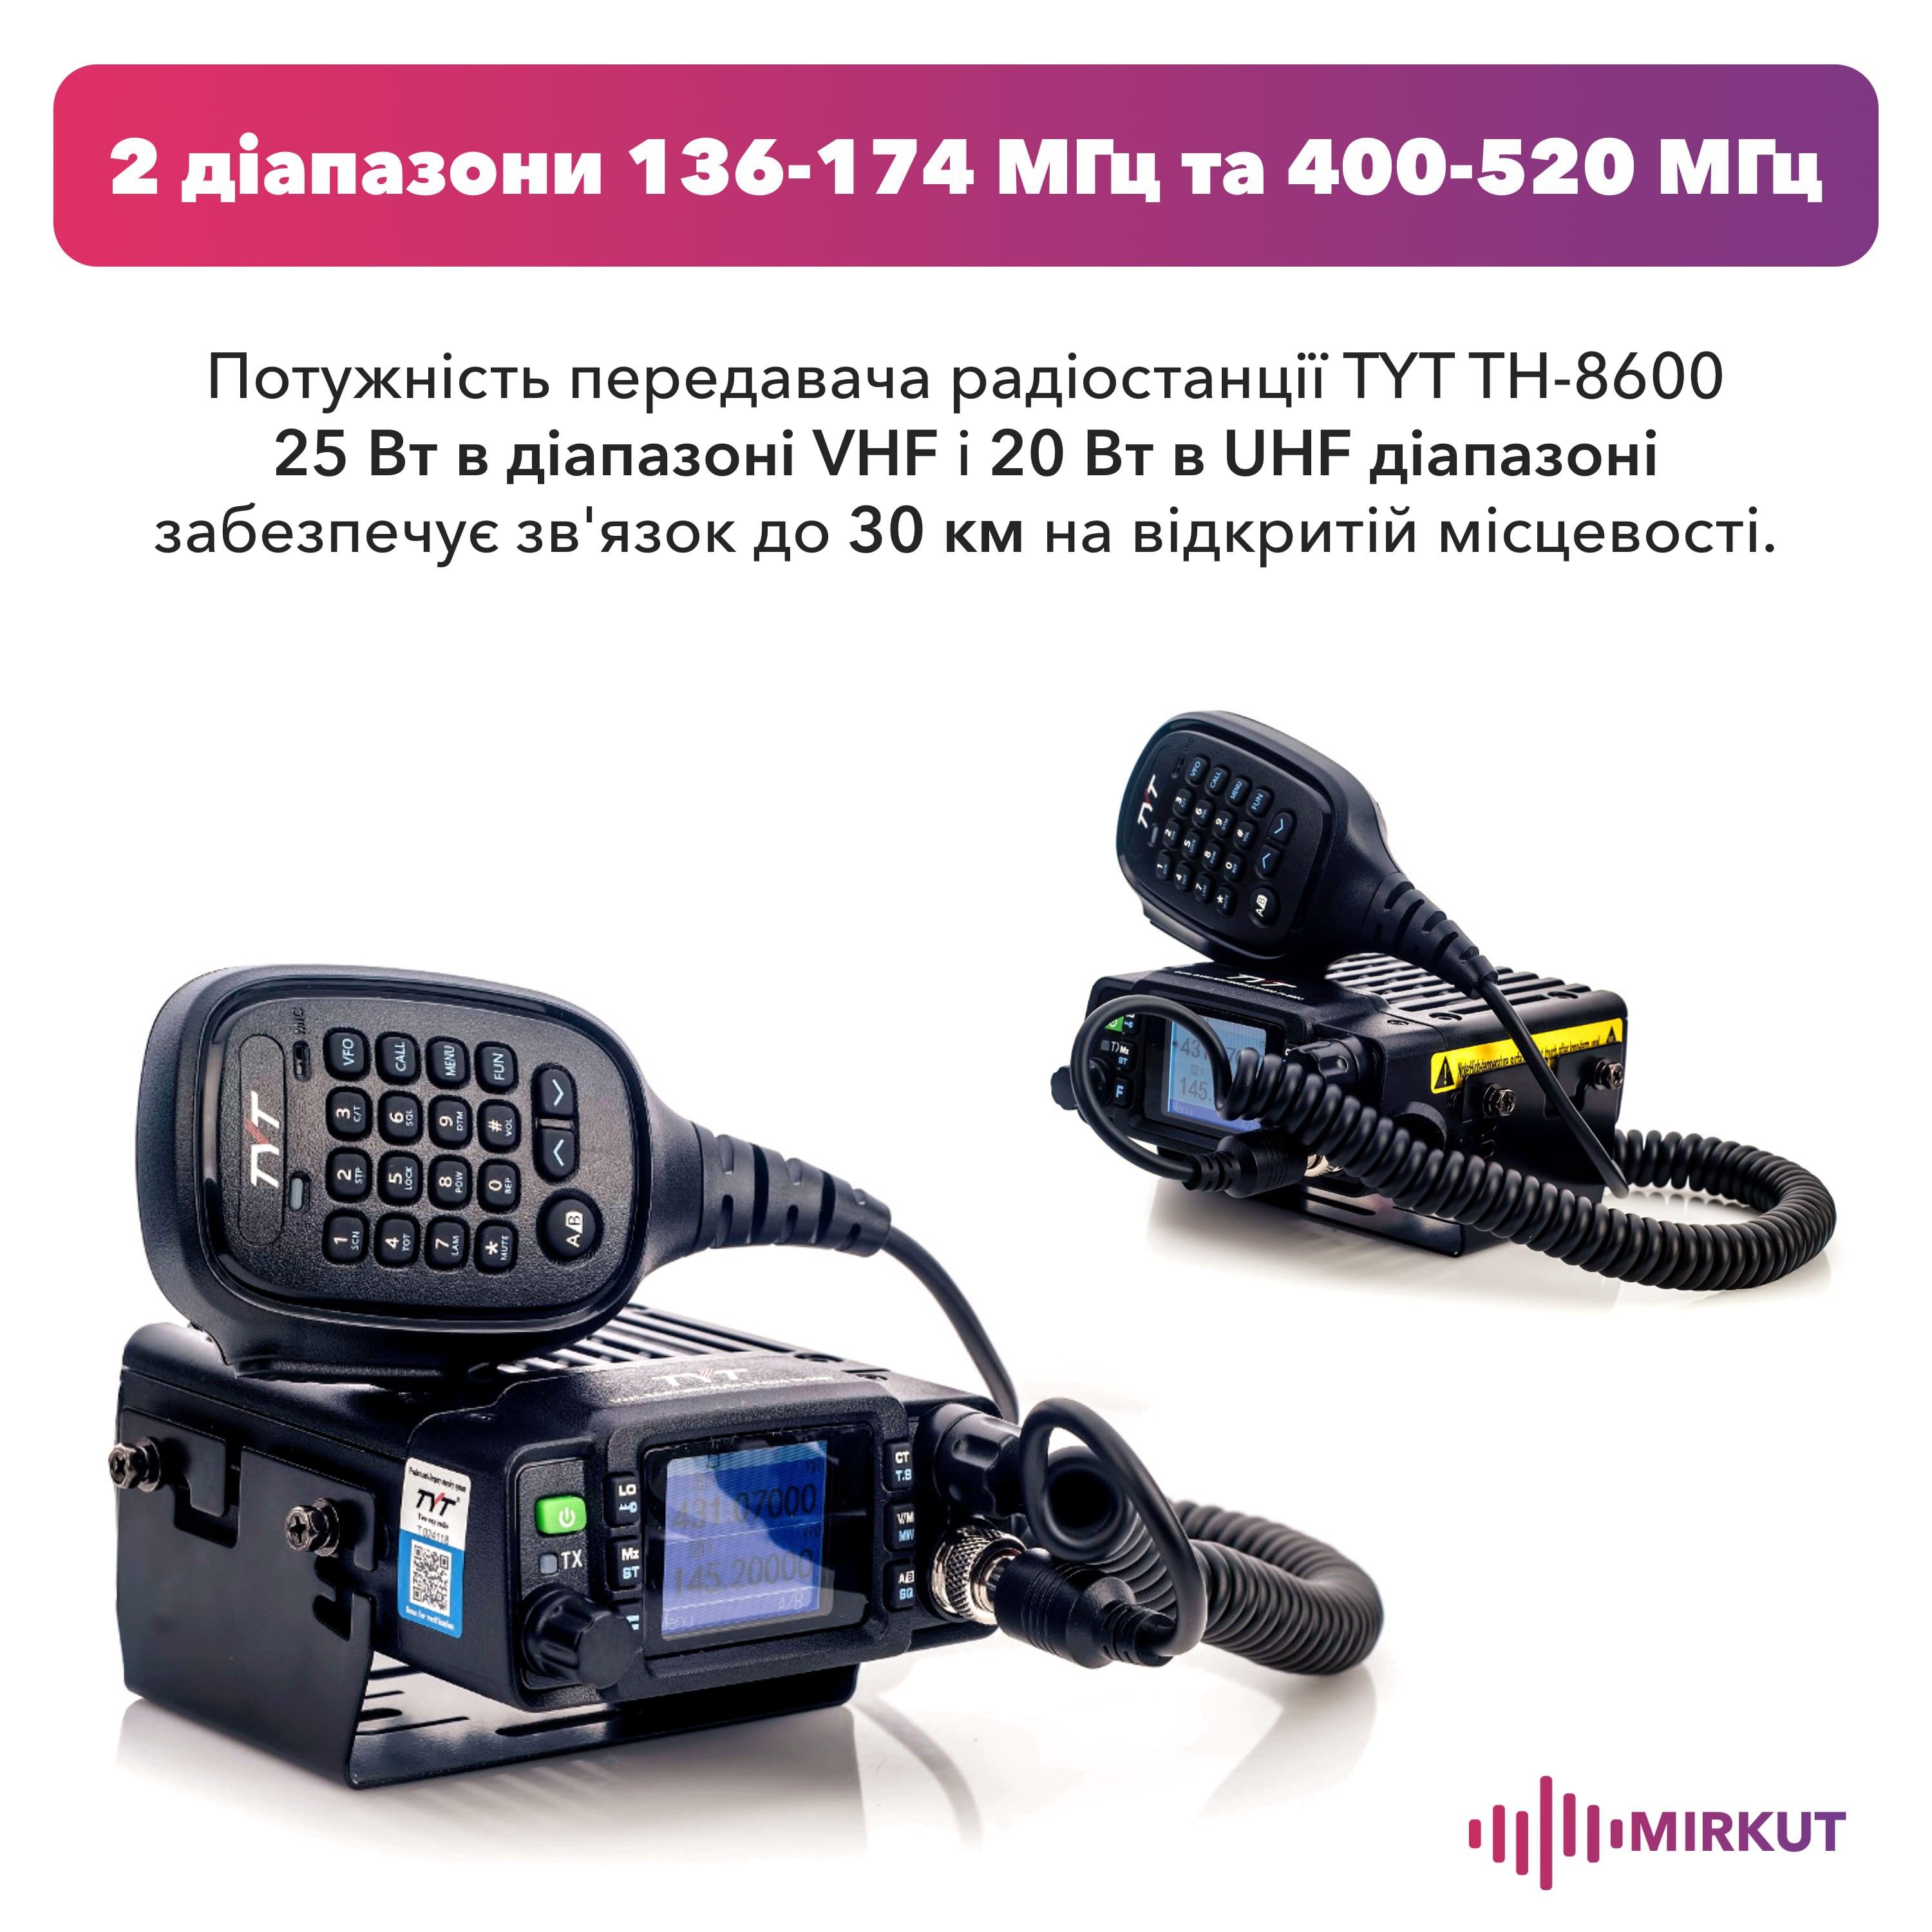 Автомобільна радіостанція TYT TH-8600 waterproof (8291) - фото 2